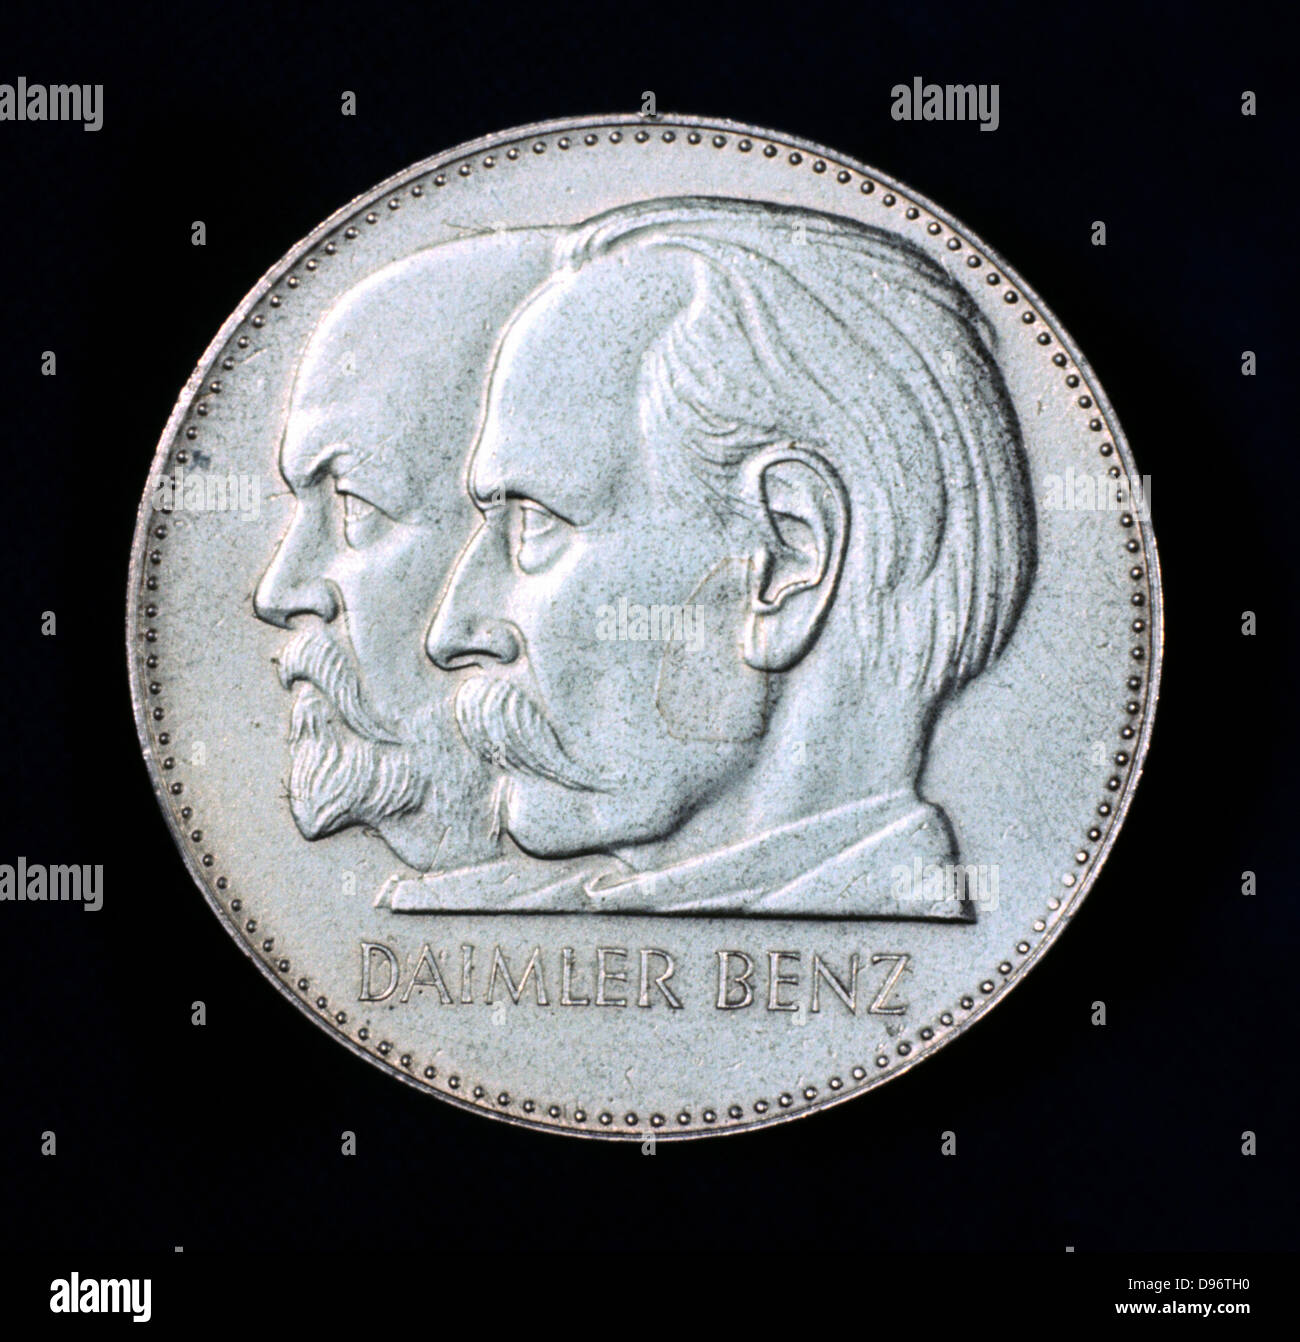 Gottlieb Wilhelm Daimer (1834-1900), links, und Arl Friedrich Benz 1844-1929) von einer Medaille zum Gedenken an 75 Jahre Automobilgeschichte. Stockfoto